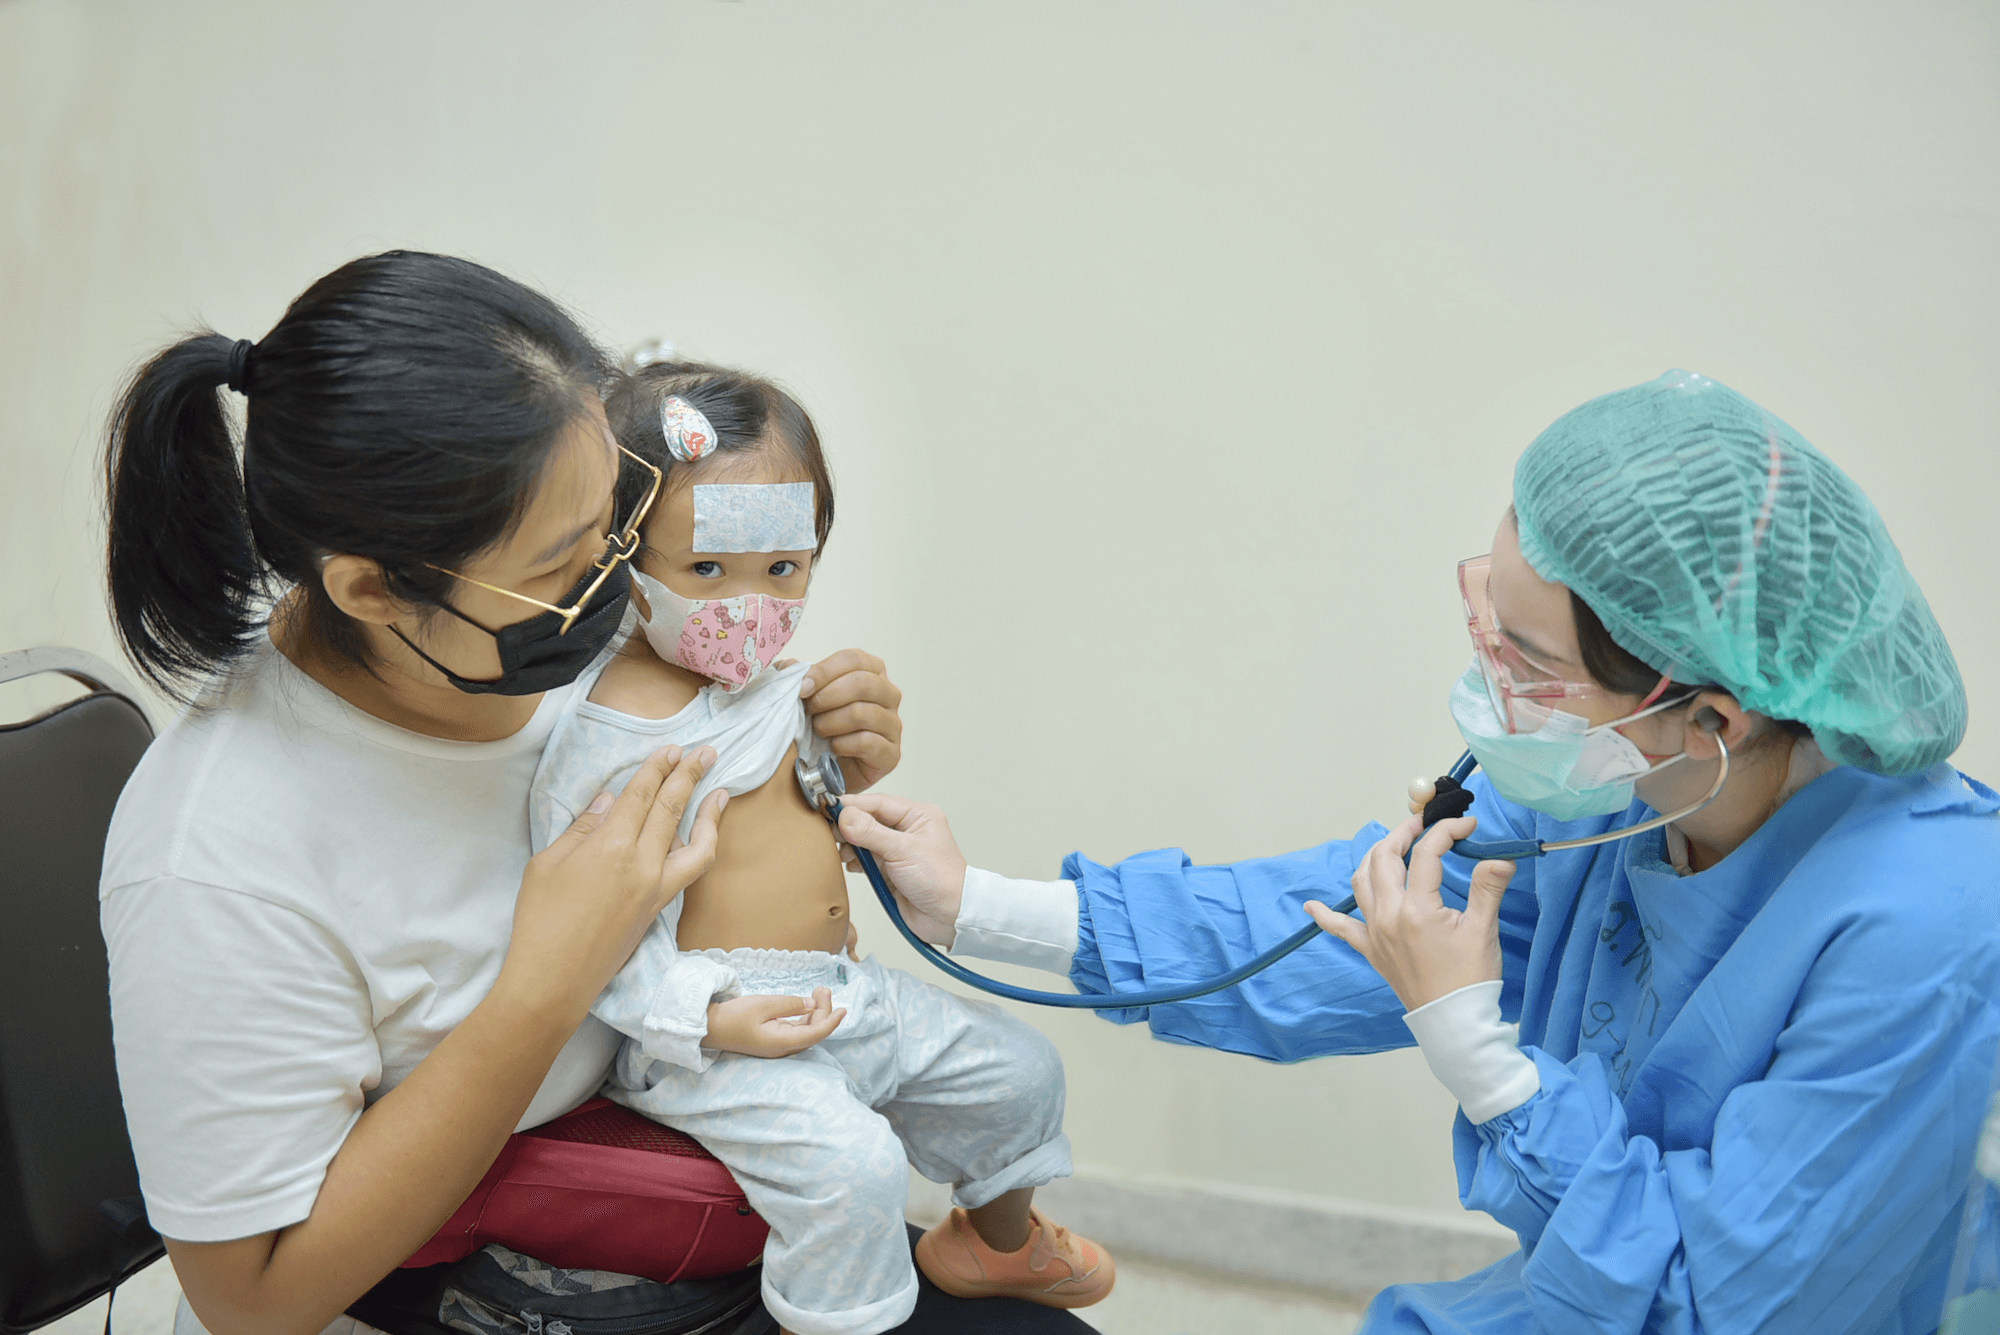 เด็กเล็กได้รับการตรวจคัดกรองโควิด-19 มูลนิธิโรงพยาบาลเด็ก กองทุนอาคารเฉลิมพระเกียรติฯ